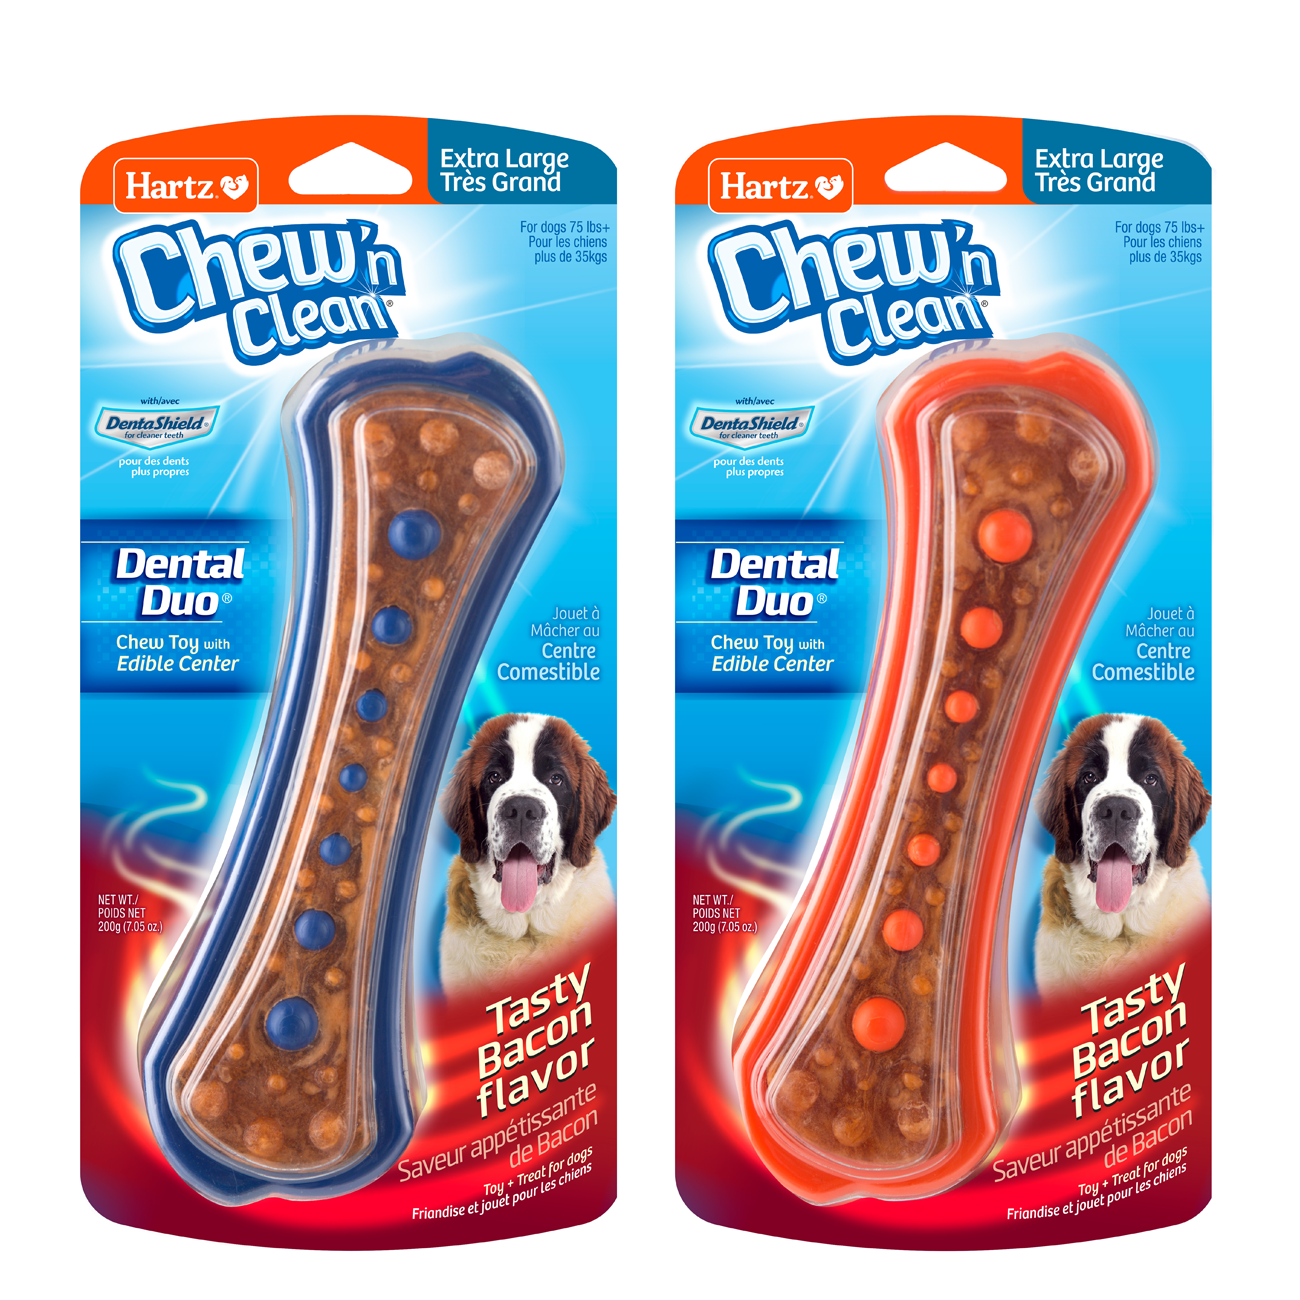 Hartz® Chew 'n Clean® Tri-Point Dog Toy - Medium